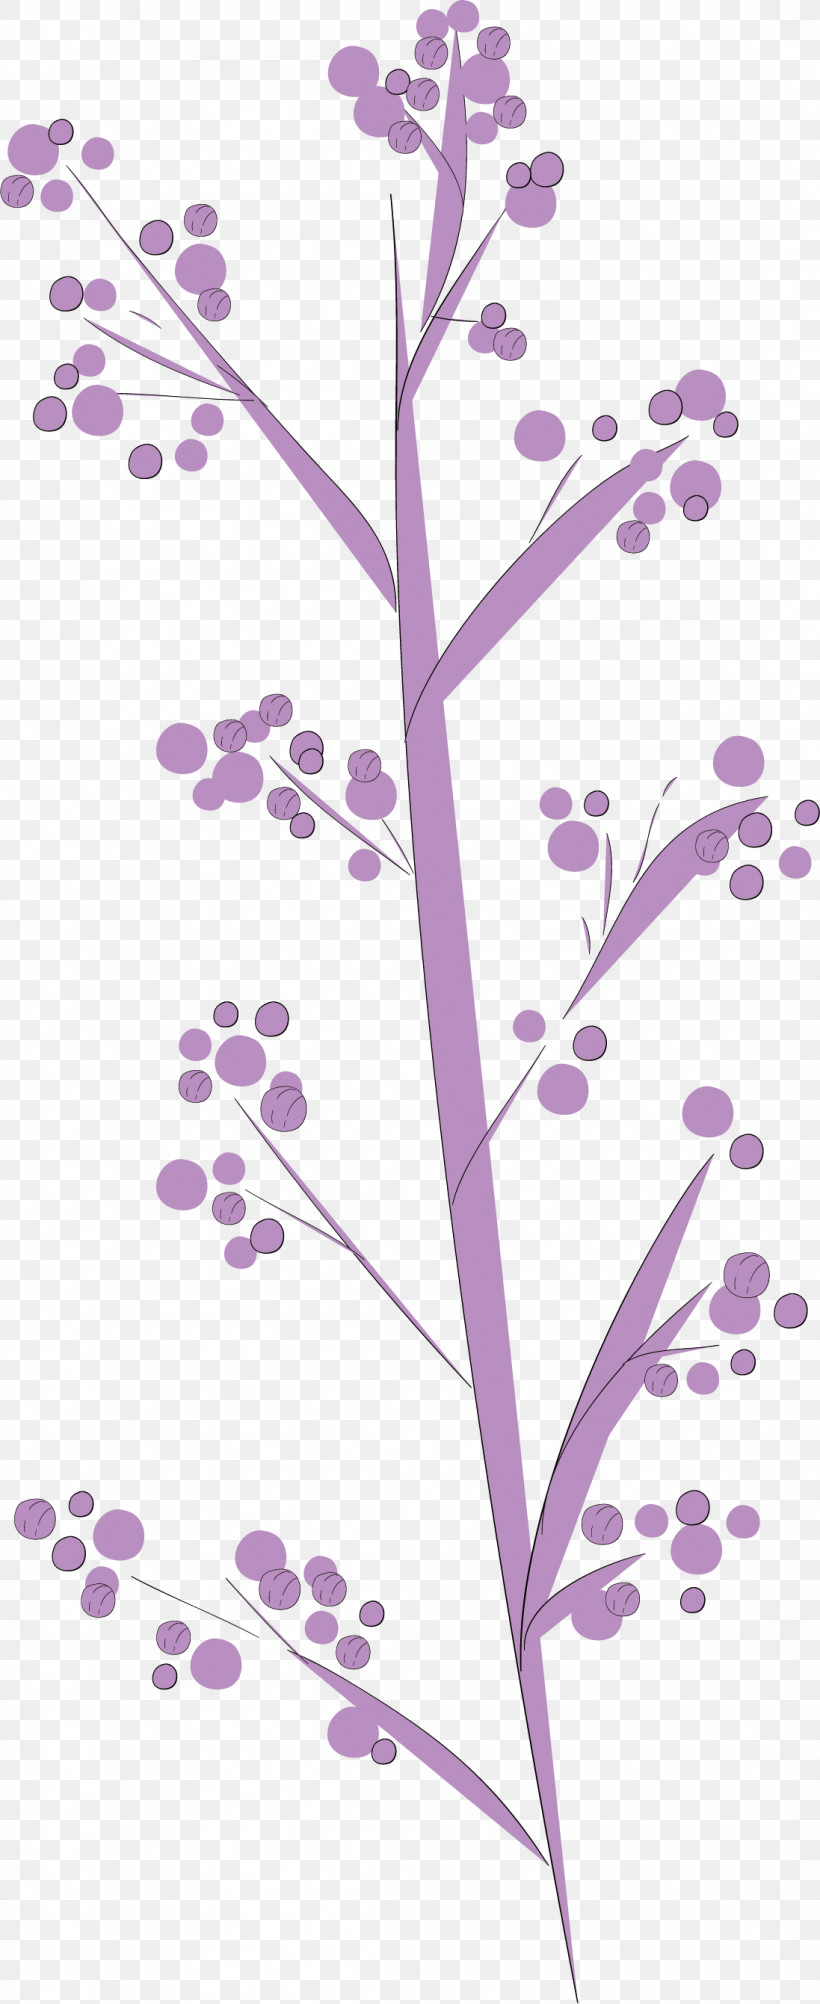 Simple Leaf Simple Leaf Drawing Simple Leaf Outline, PNG, 1097x2682px, Simple Leaf, Biology, Floral Design, Flower, Leaf Download Free